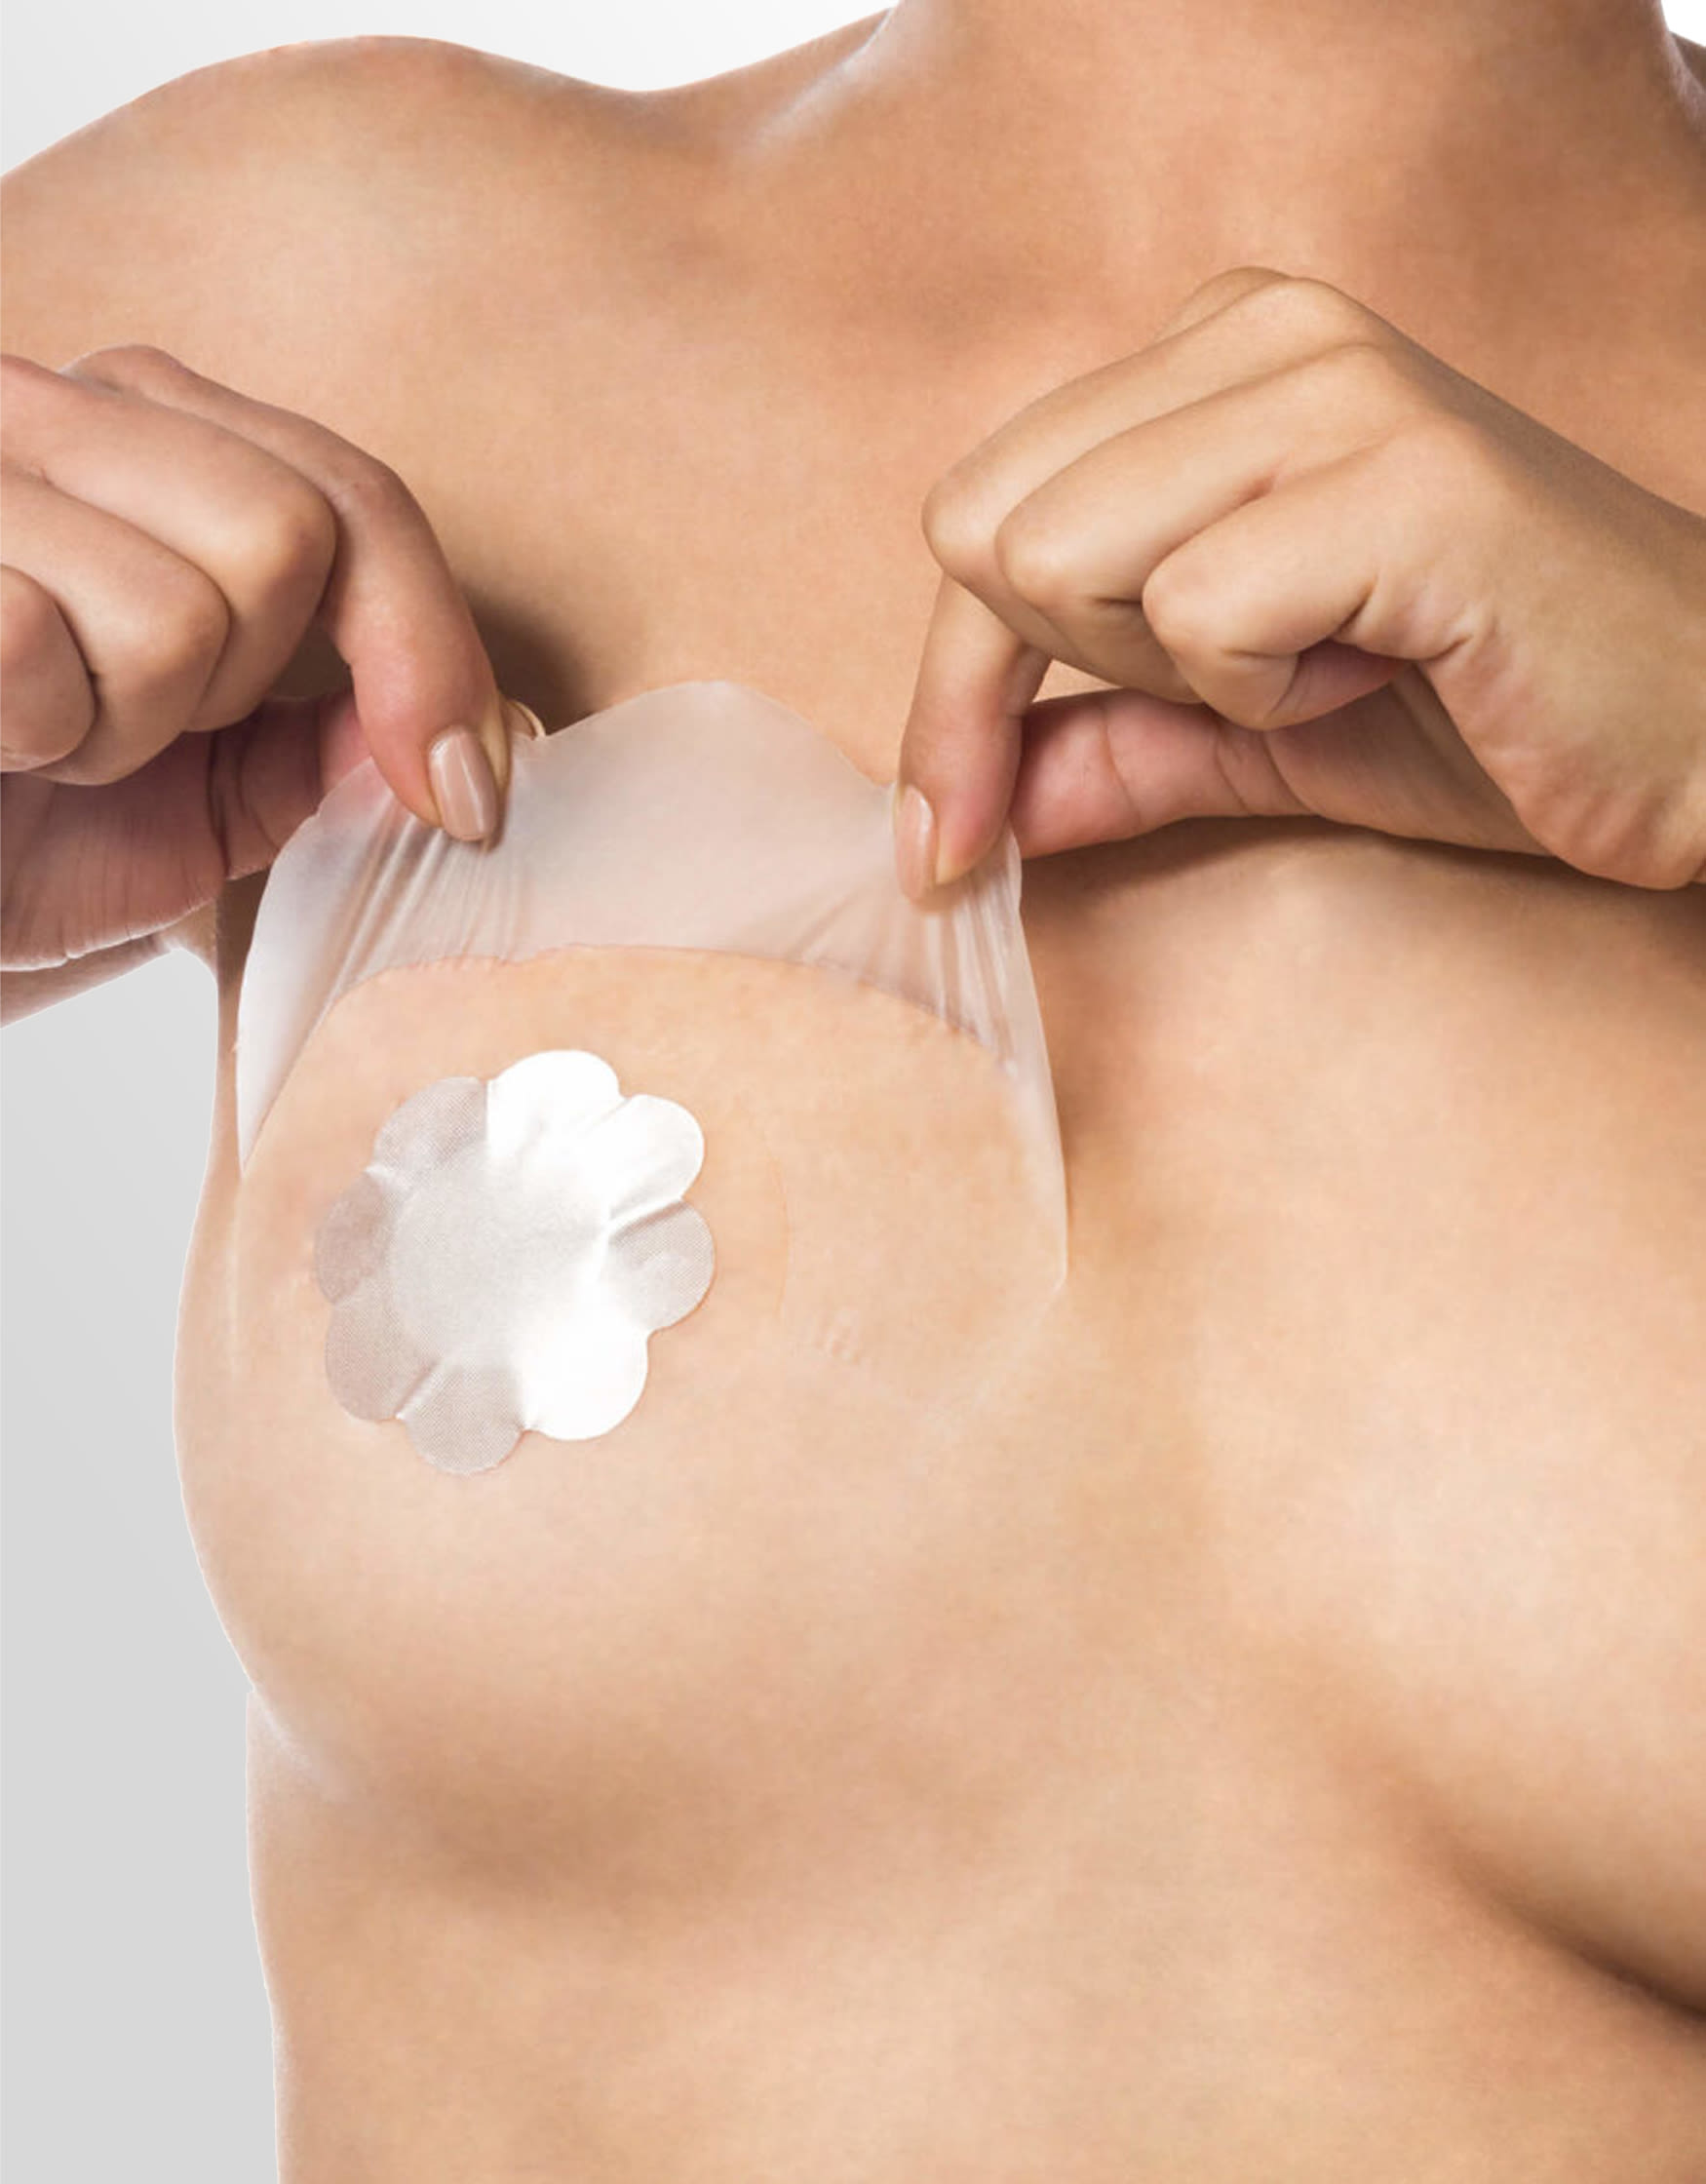 Breast Tape - Beige – Breast Tape Co